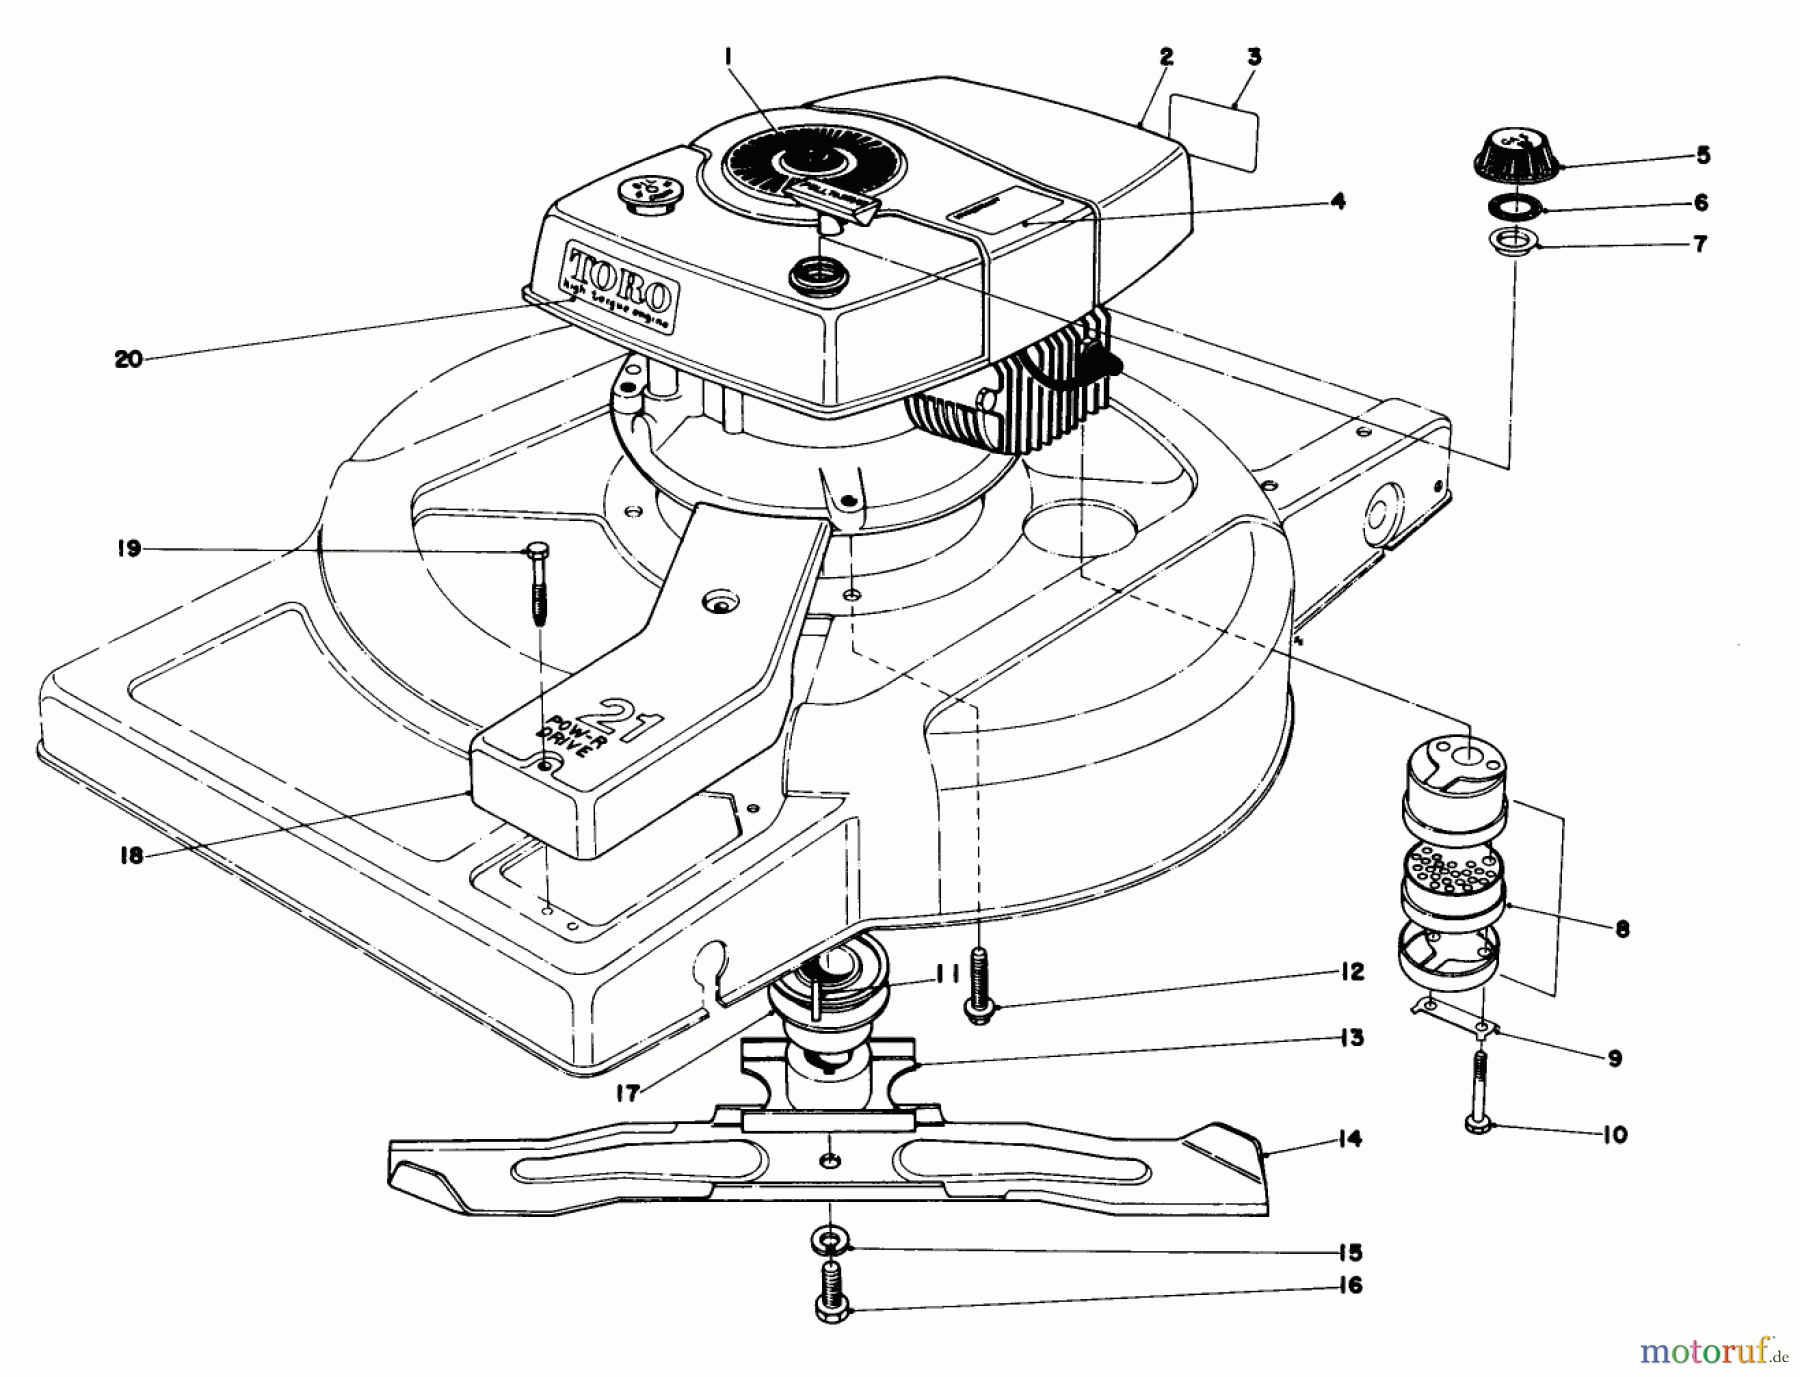  Toro Neu Mowers, Walk-Behind Seite 1 18060 - Toro Lawnmower, 1978 (8000001-8999999) ENGINE ASSEMBLY MODEL 18060